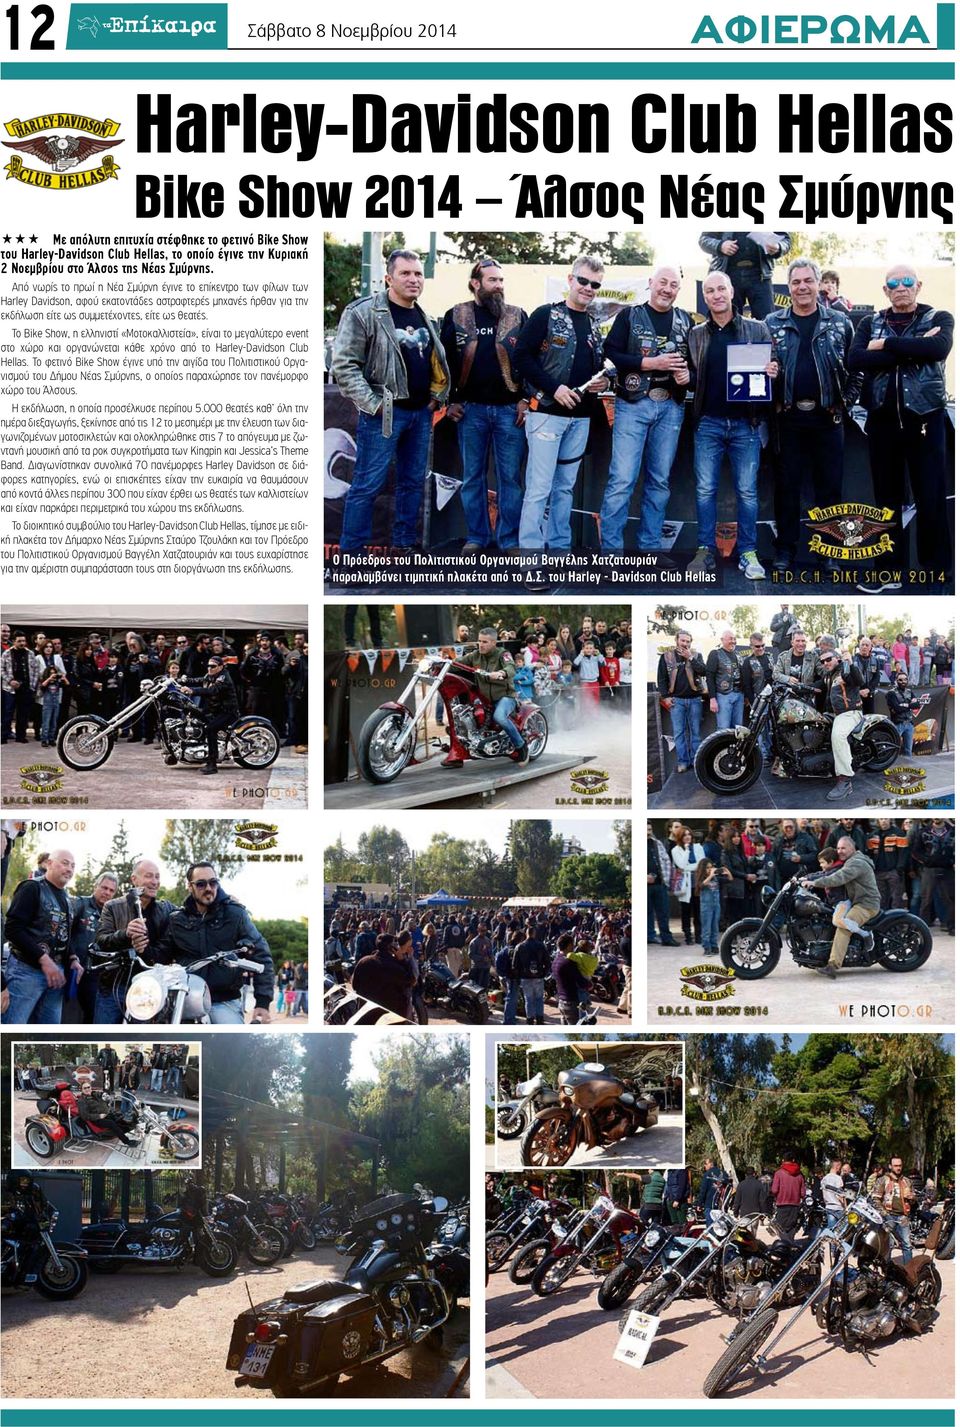 Από νωρίς το πρωί η Νέα Σμύρνη έγινε το επίκεντρο των φίλων των Harley Davidson, αφού εκατοντάδες αστραφτερές μηχανές ήρθαν για την εκδήλωση είτε ως συμμετέχοντες, είτε ως θεατές.